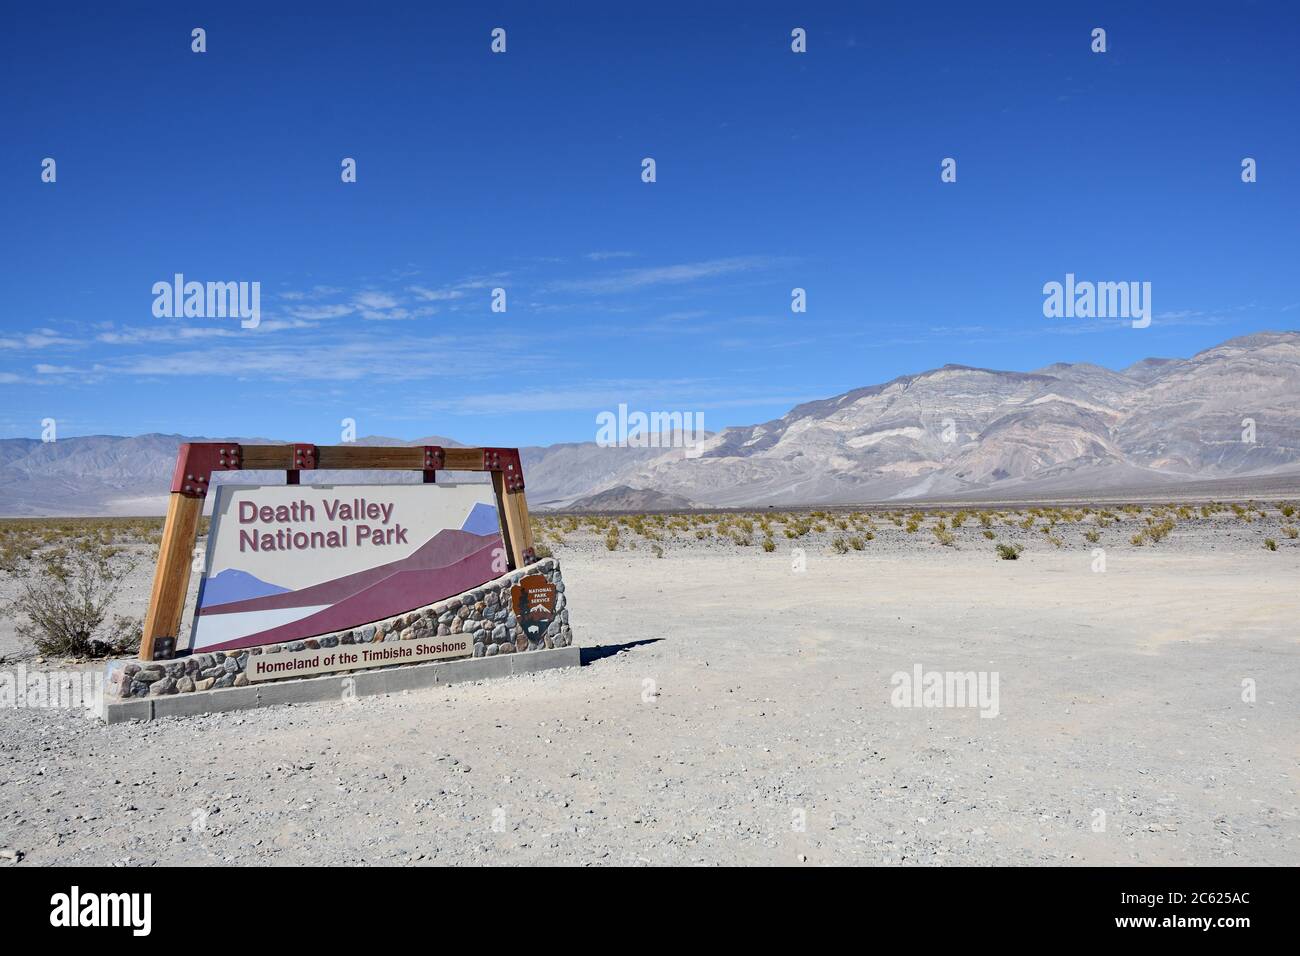 Panneau du parc national de Death Valley le long de Panamint Valley Road. Le panneau est dans le désert avec les montagnes de Panamint Range derrière et le ciel bleu. Banque D'Images